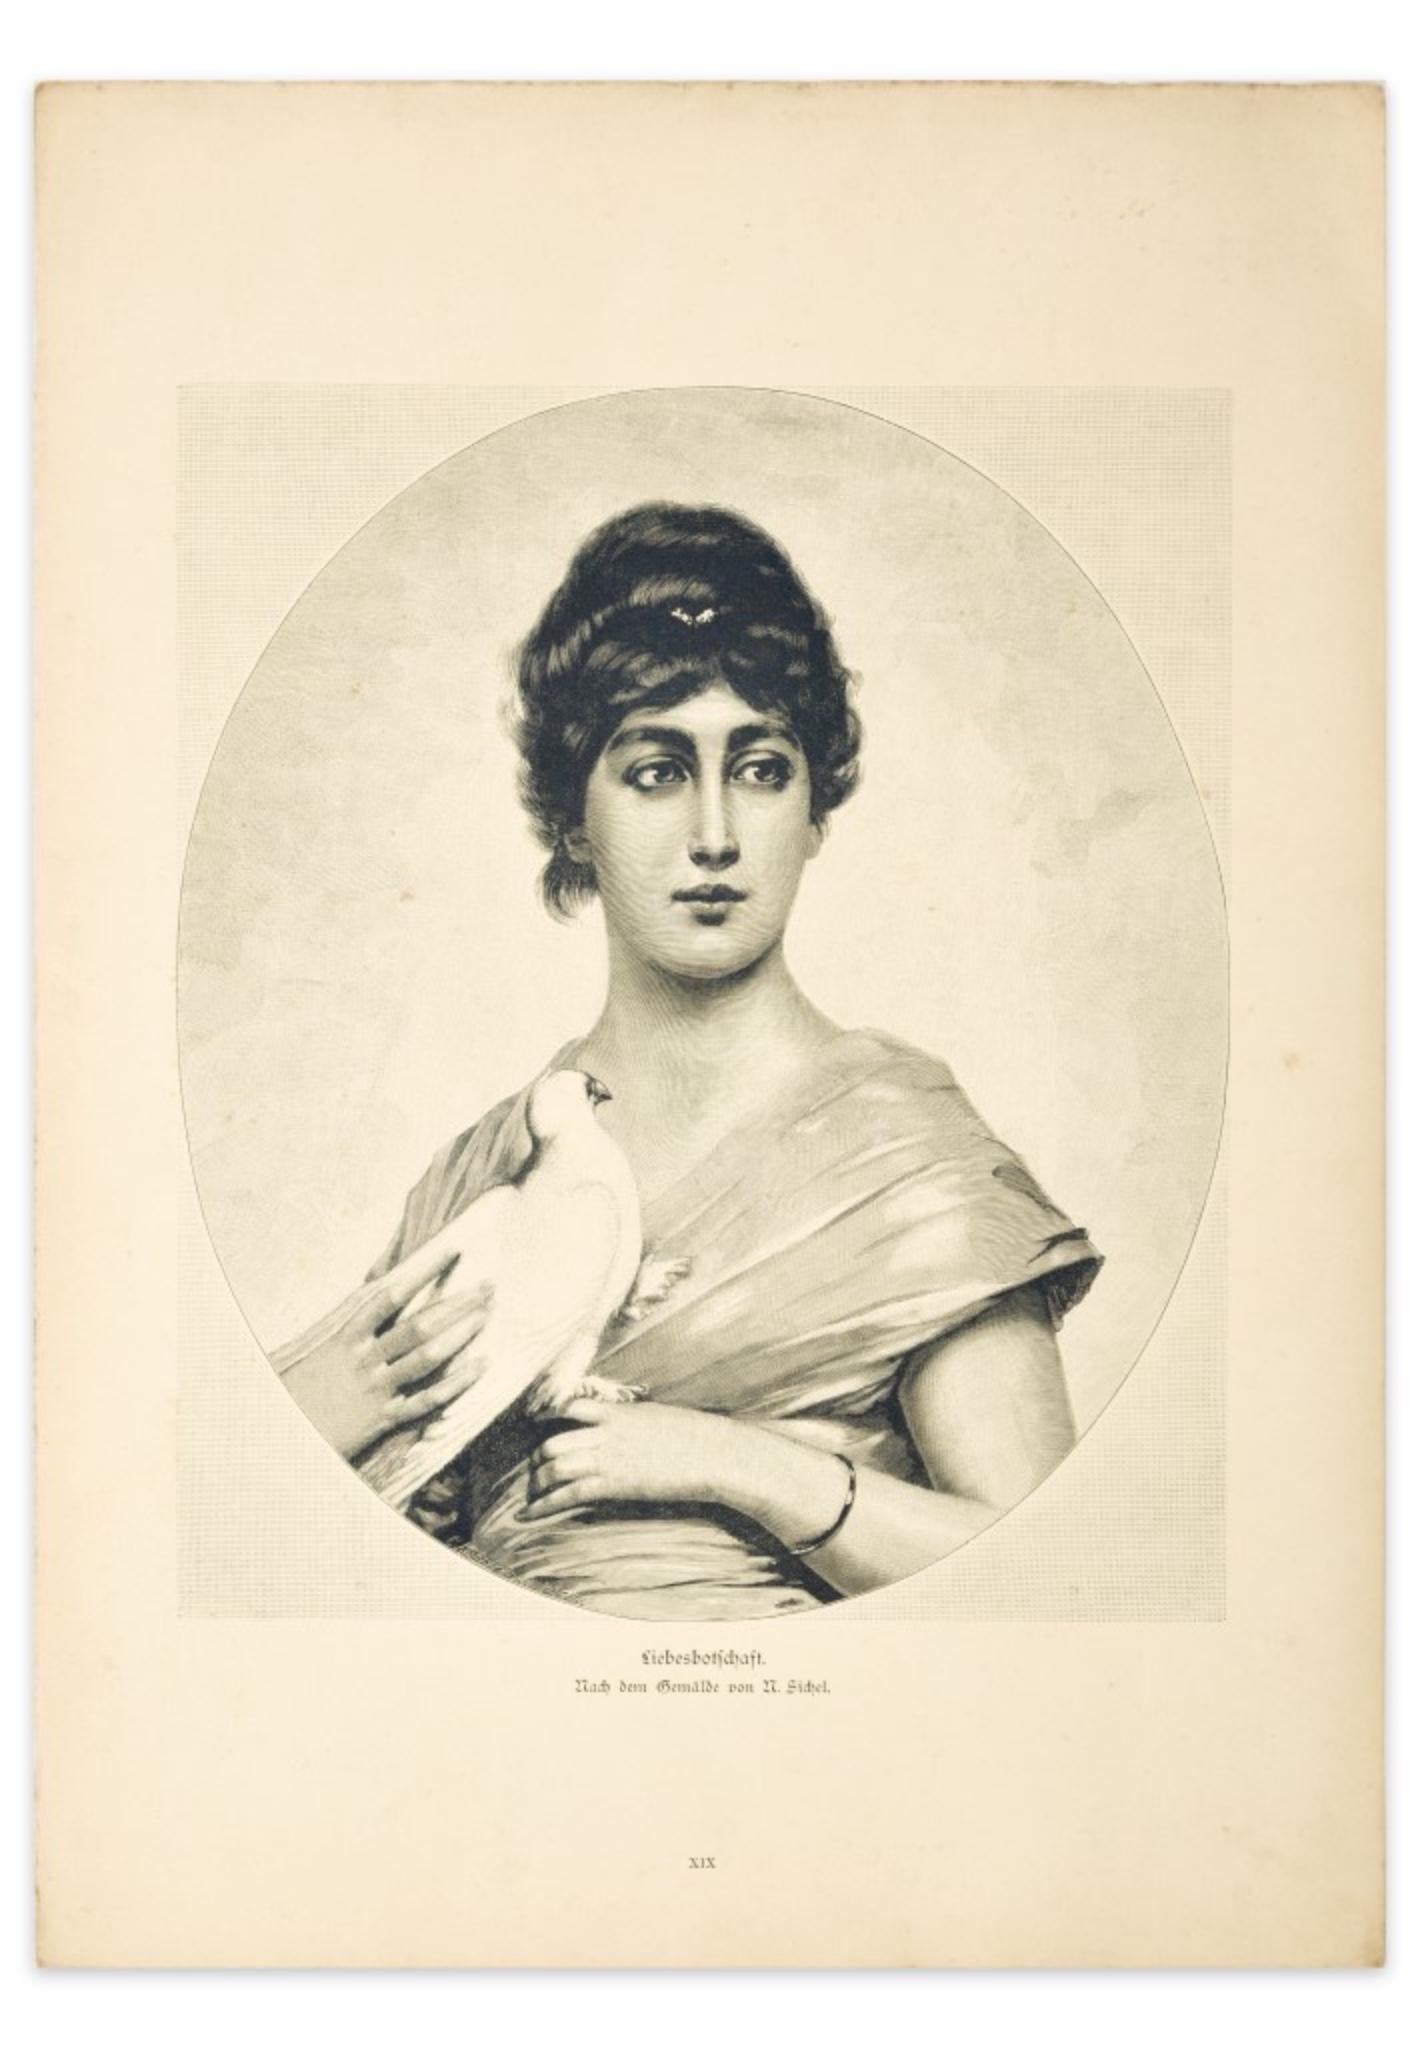 D'Apres M. Sichel Figurative Print - Woman with Dove - Original Zincography after M. Sichel - 1905